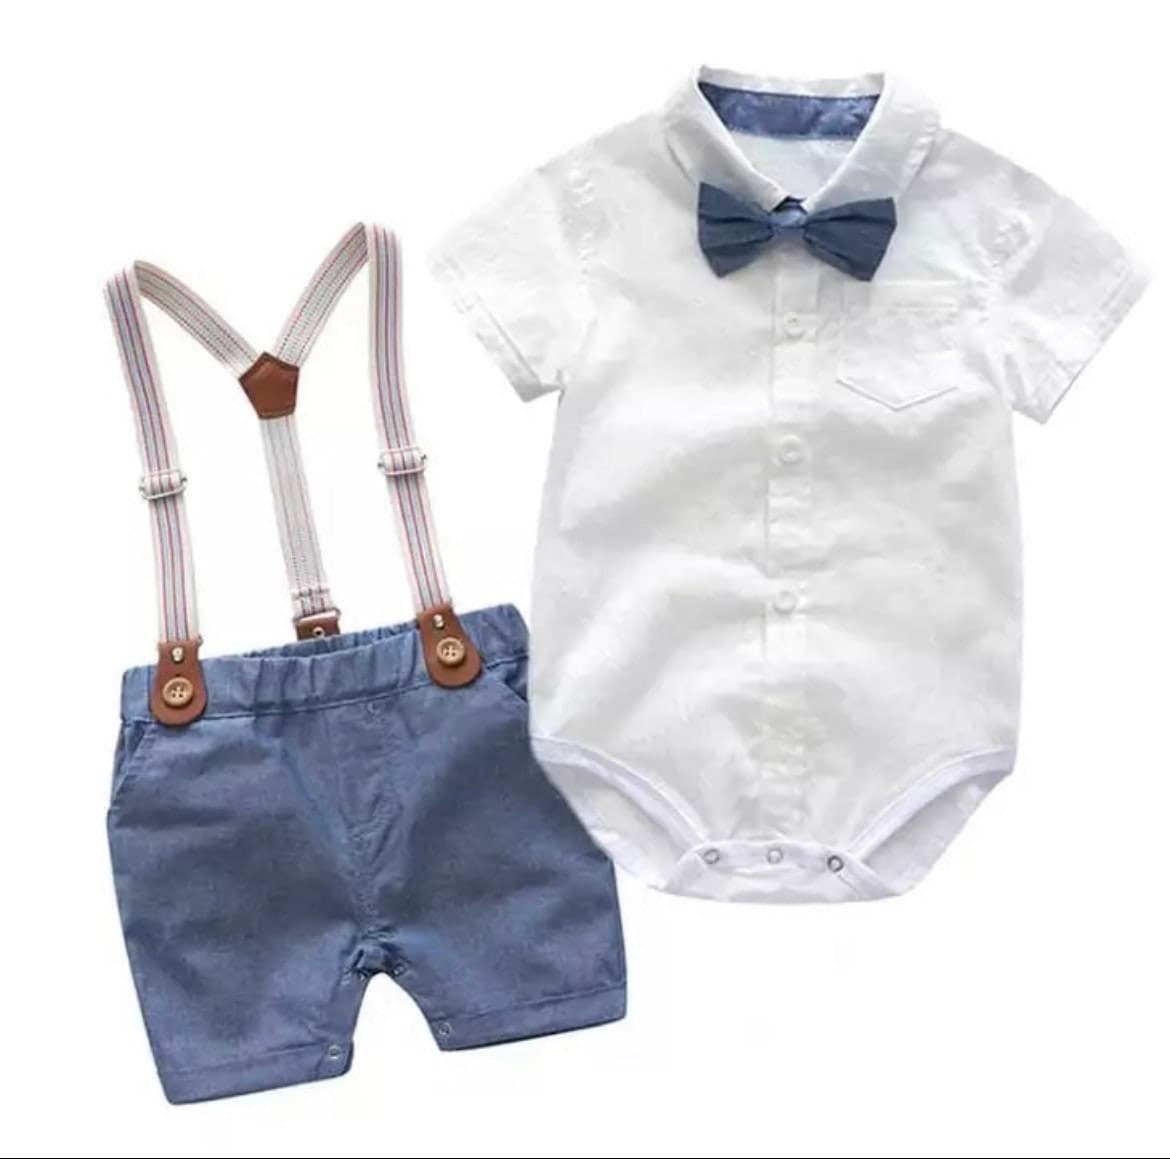 Byron Set - Baby Boy Gentleman Romper Suit Set in Newborn to 24 months.